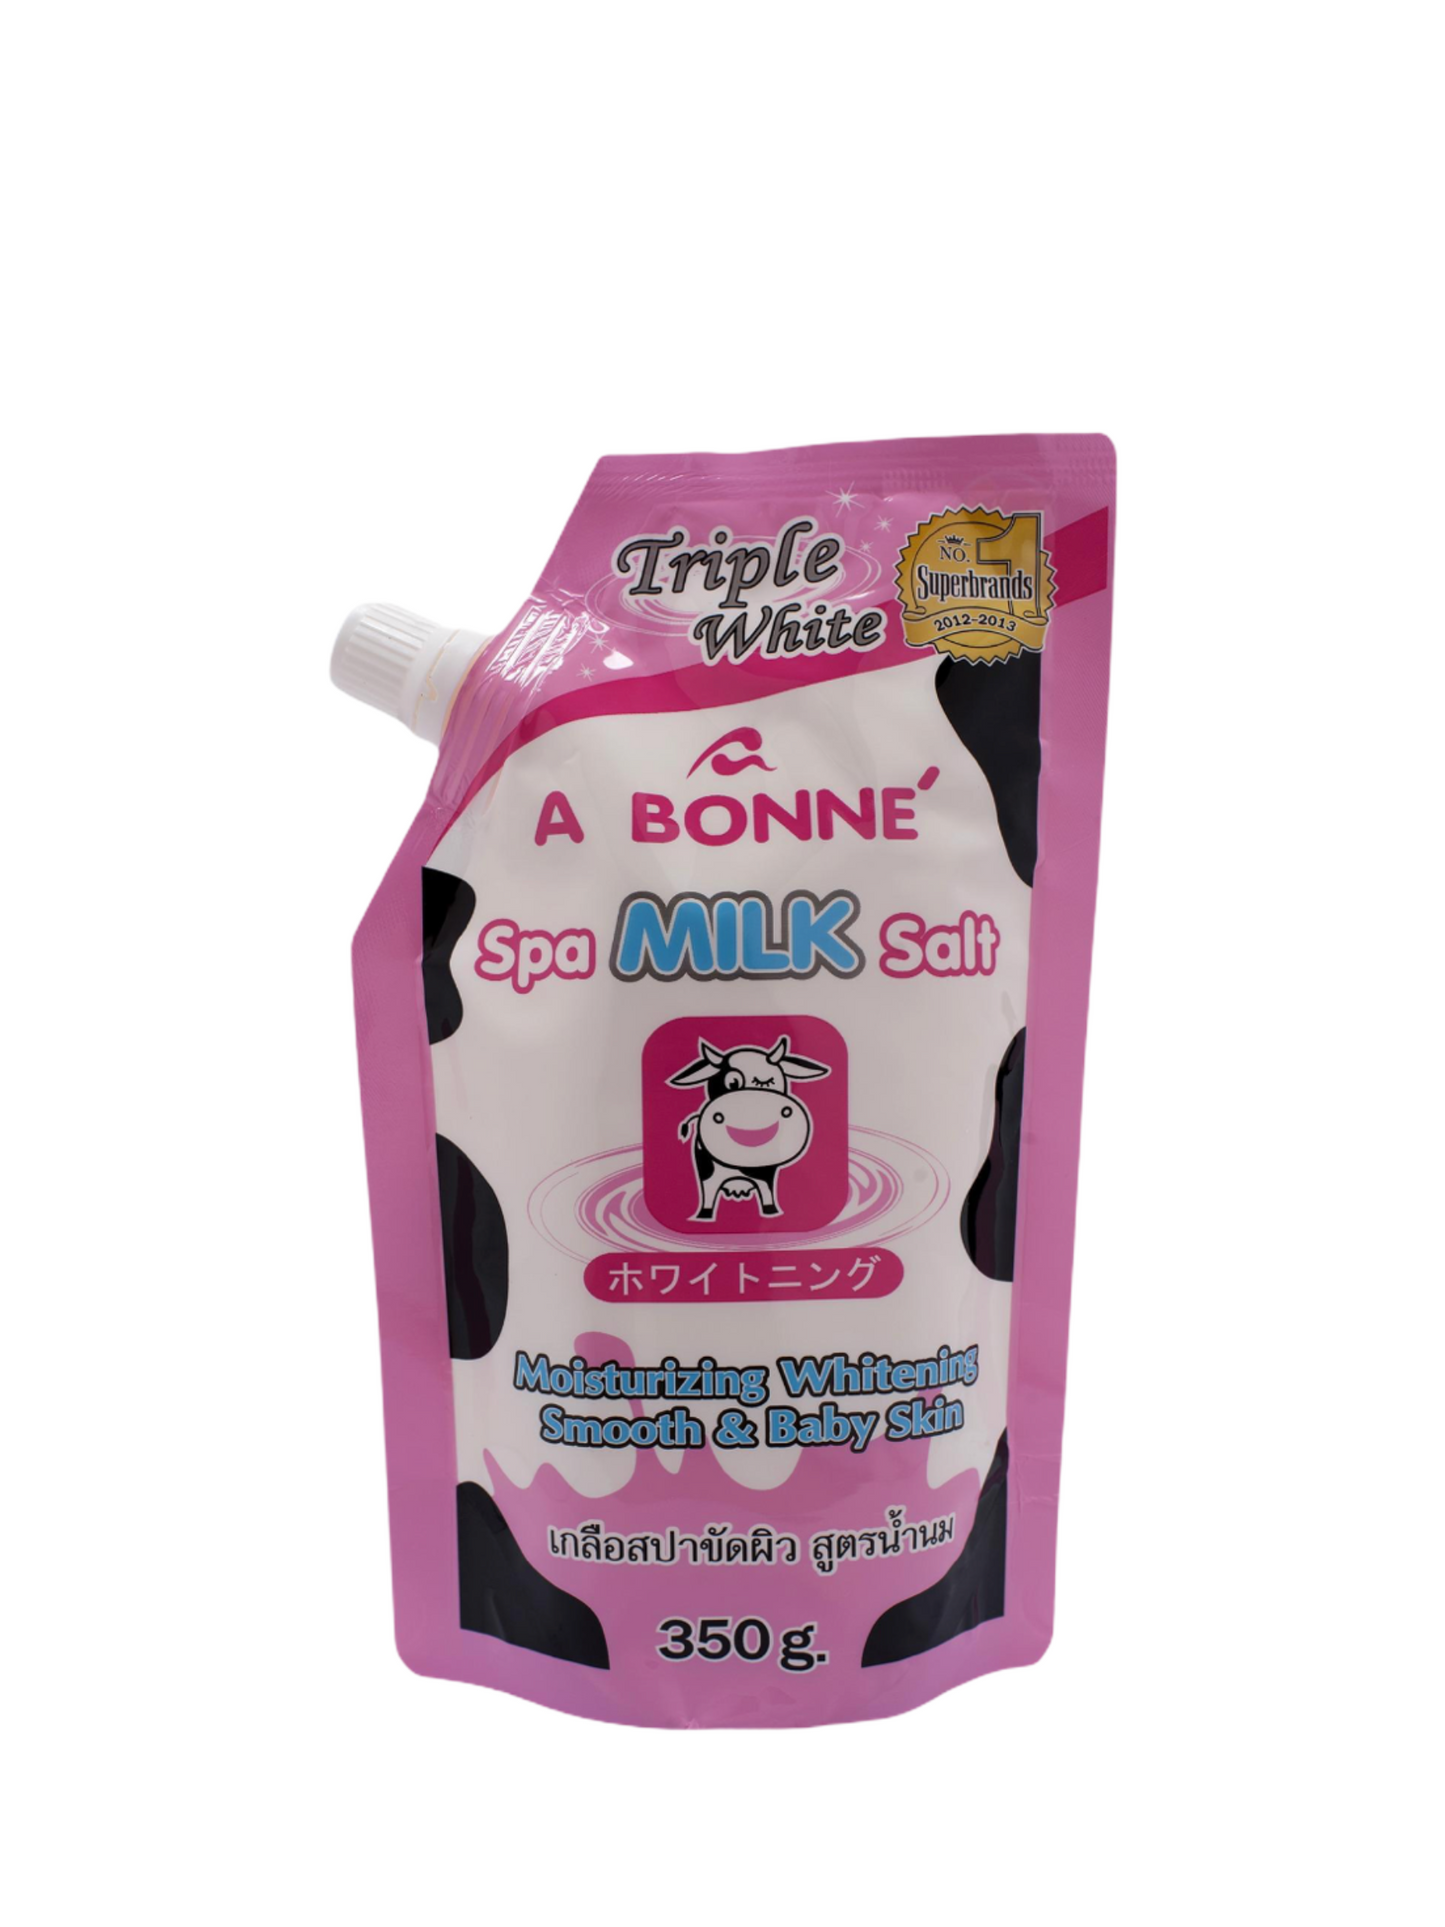 Abonne Milk Salt Scrub 350g